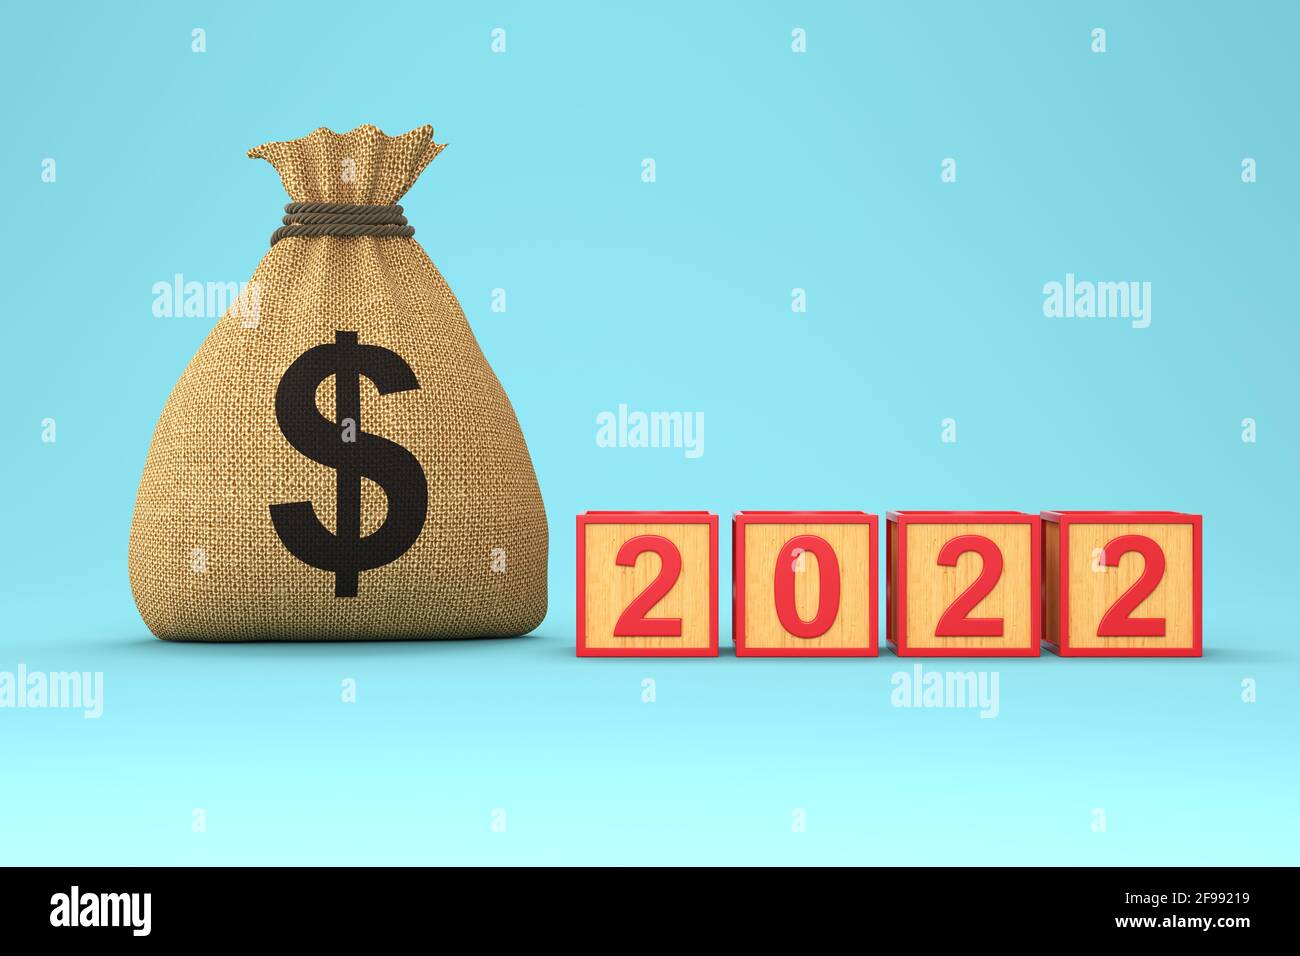 Neues Jahr 2022 Kreatives Design-Konzept mit Dollar-Symbol - 3D-gerendertes Bild Stockfoto